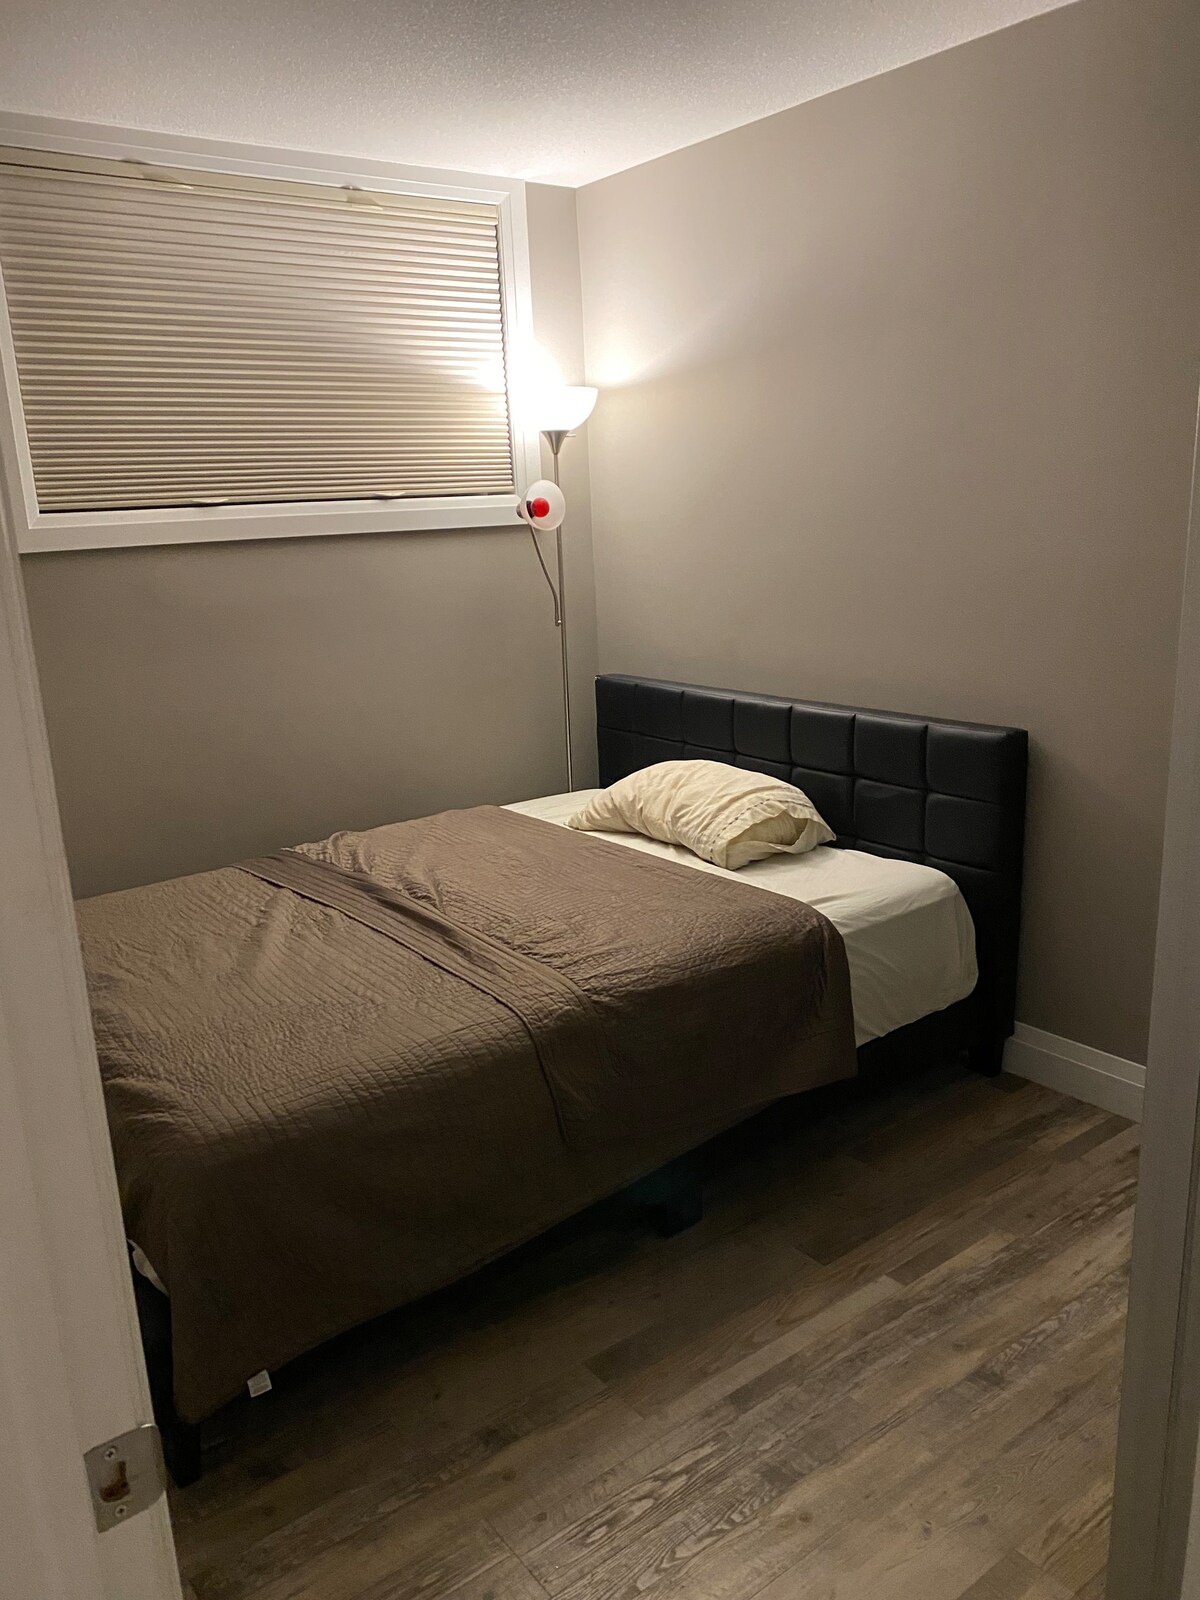 2 bedroom basement suite